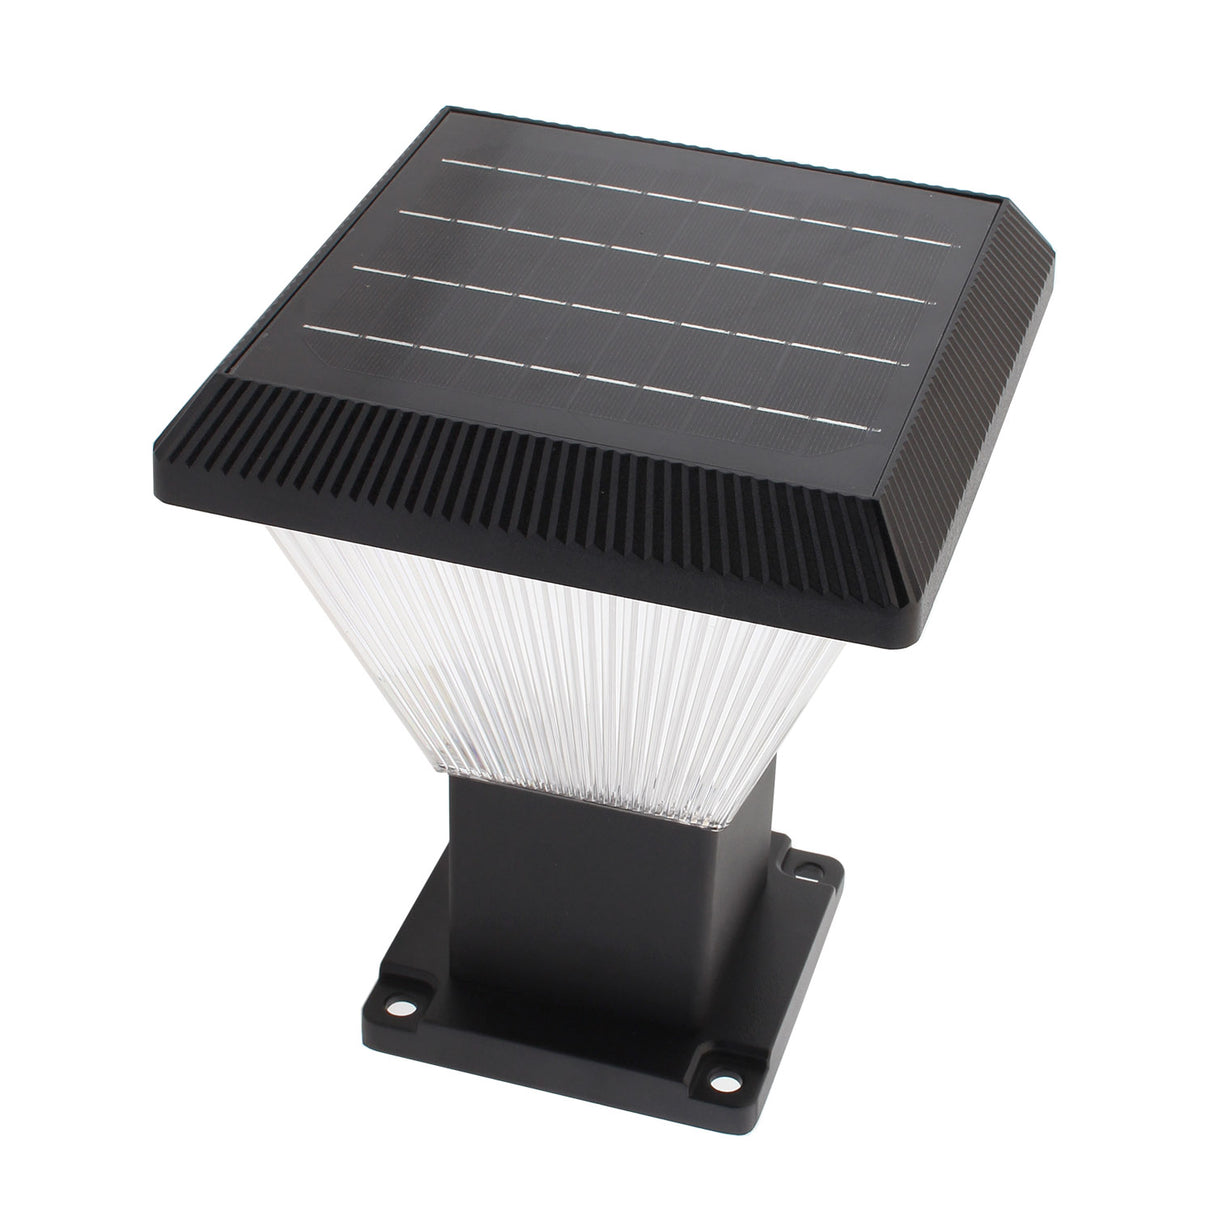 Farola LED que incorpora un sistema de alumbrado autónomo mediante energía solar. Incorpora sensor de luminosidad y mando a distancia para seleccionar el color de luz deseado para cada momento. Ideal para su instalación donde la red de energía eléctrica no puede llegar.